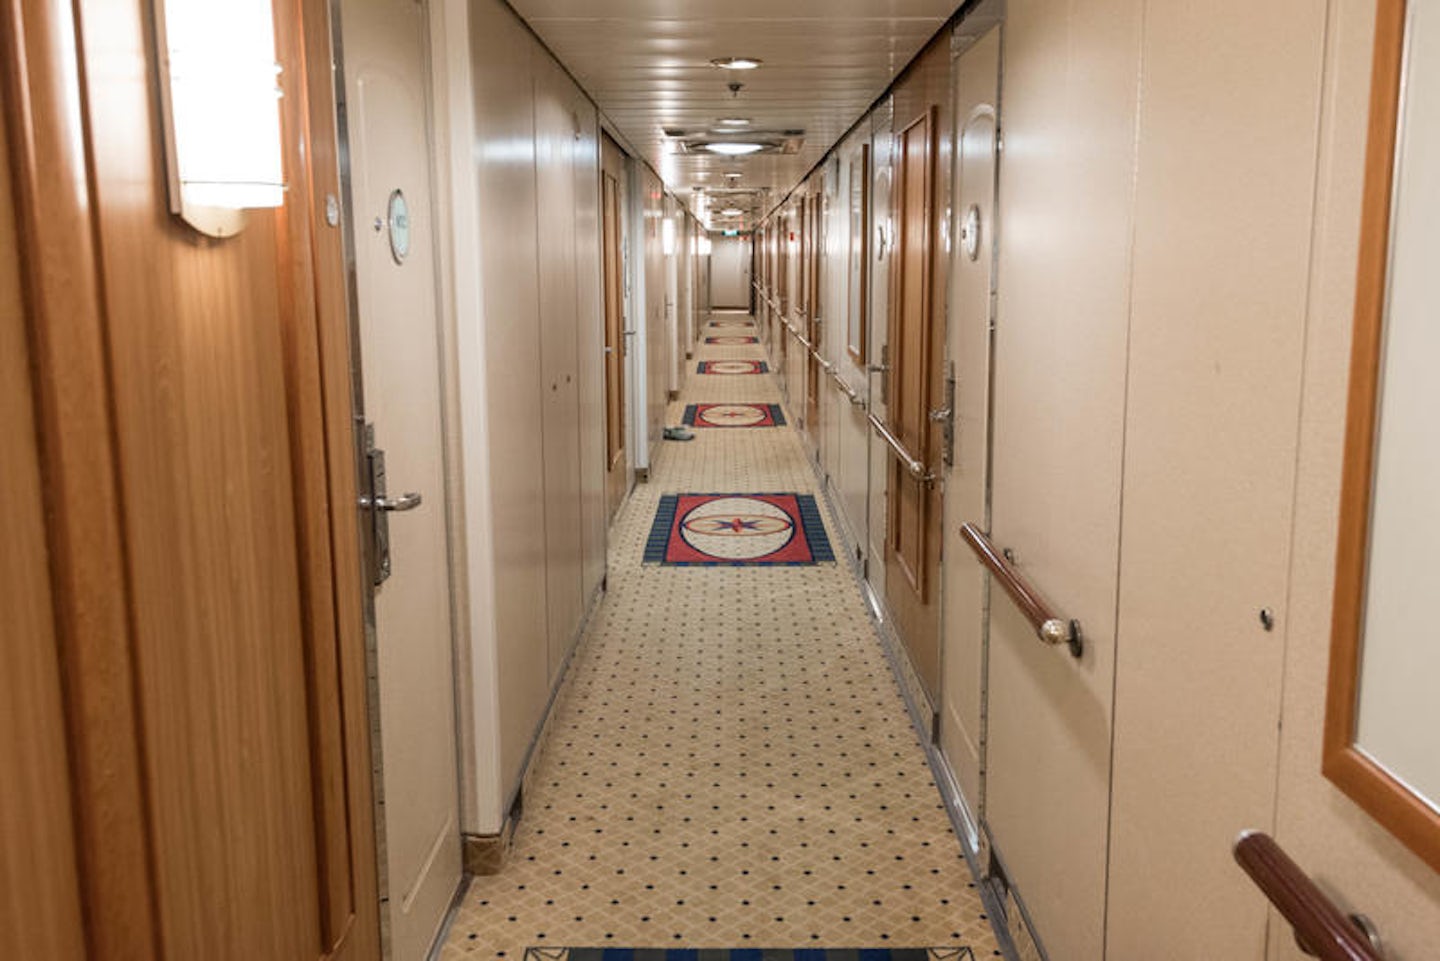 Hallways on Brilliance of the Seas